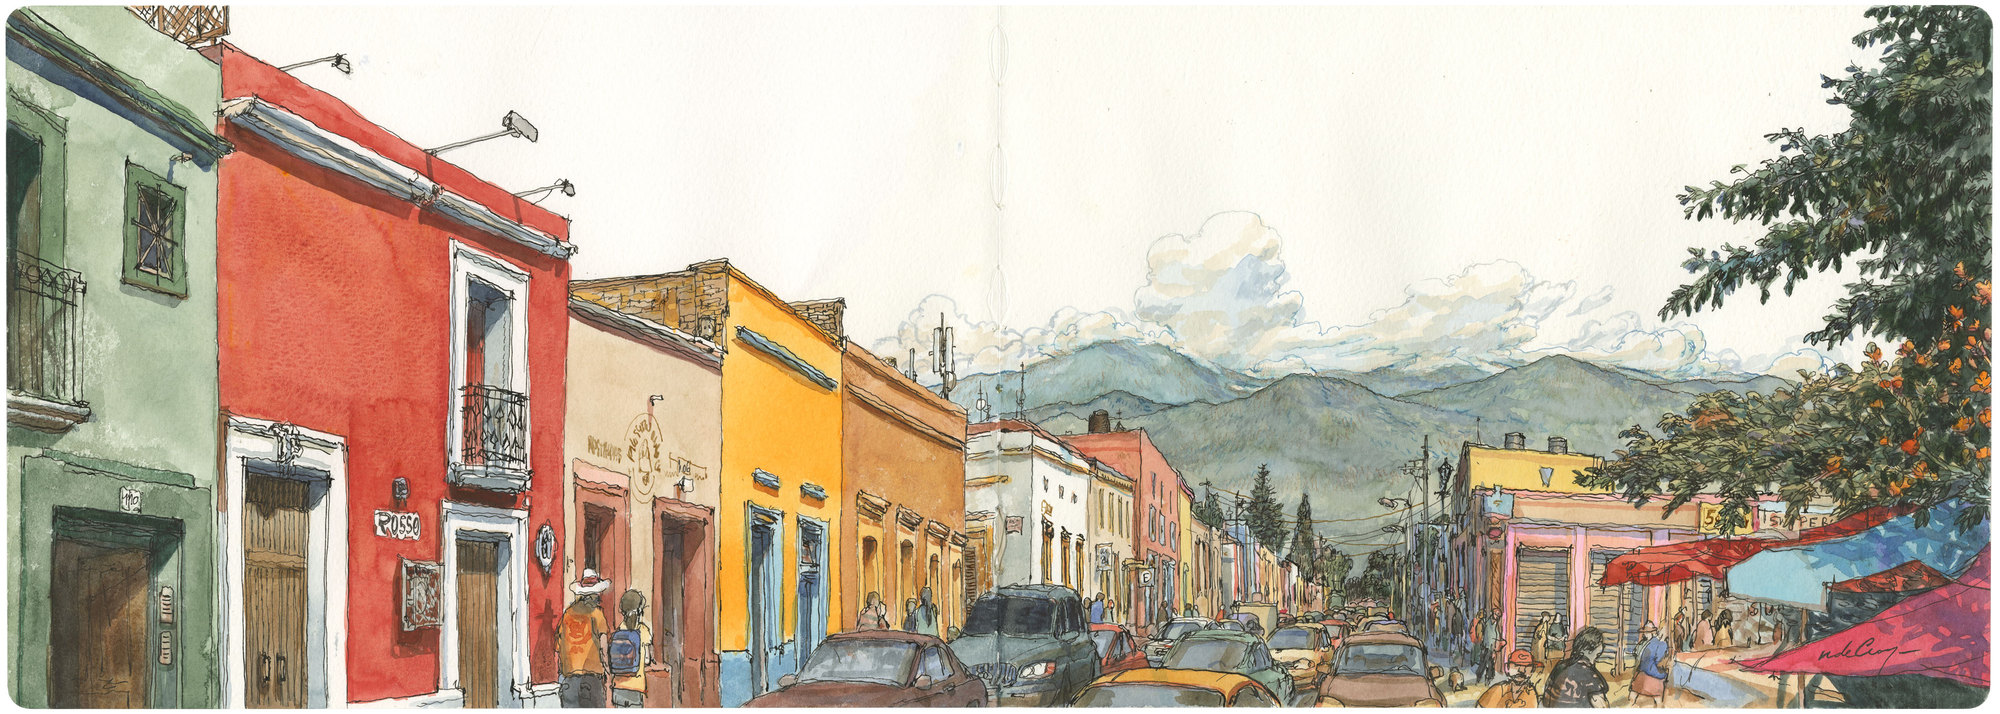 Vue de Oaxaca, Calle Manuel Doblado, Mexique, 2014